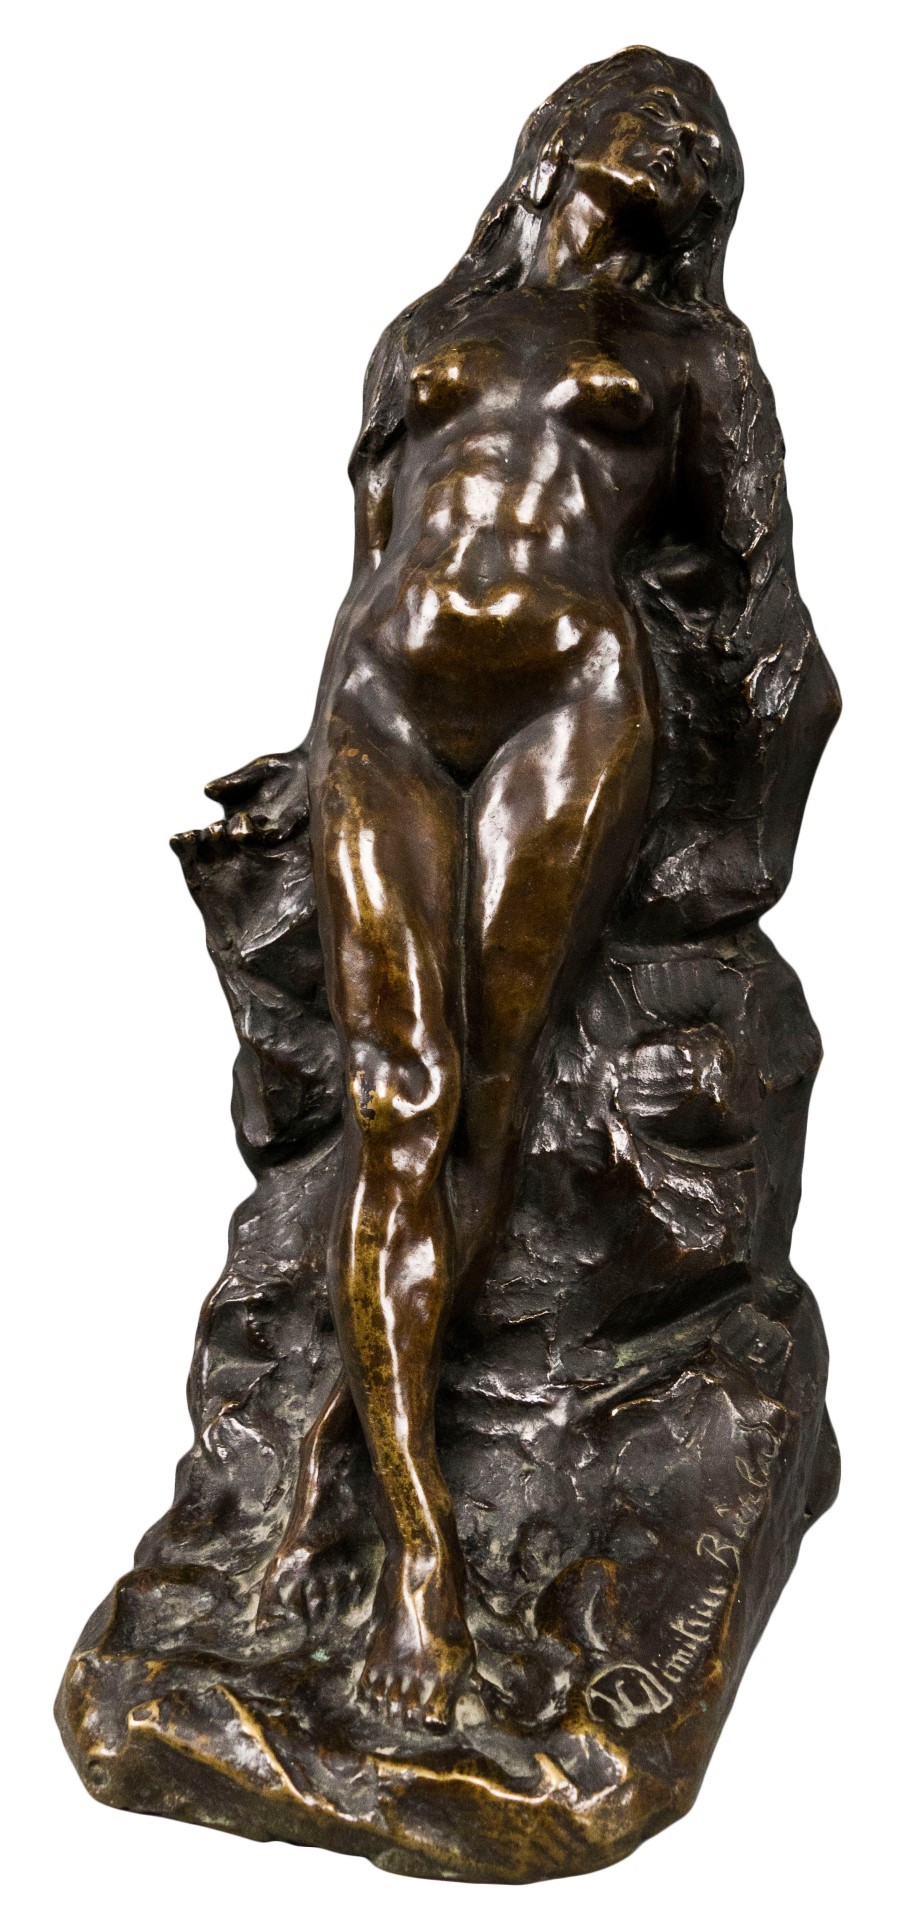 Ion DIMITRIU-BÂRLAD, sculptor